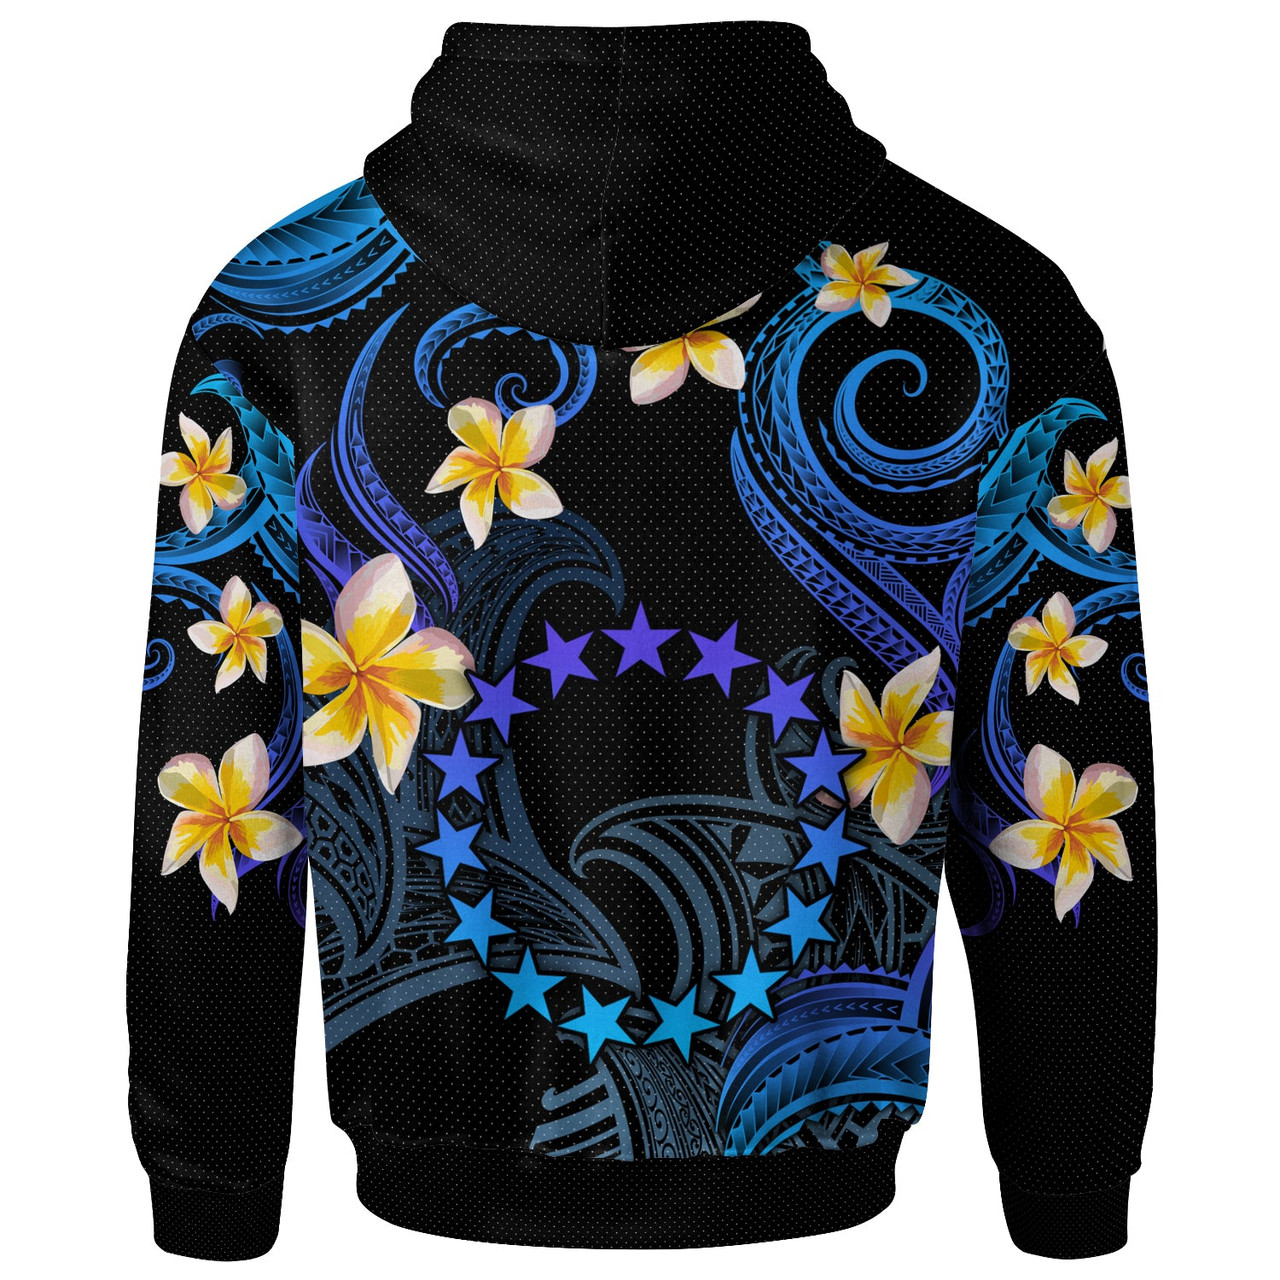 Cook Islands Hoodie - Custom Personalised Polynesian Waves with Plumeria Flowers (Blue)